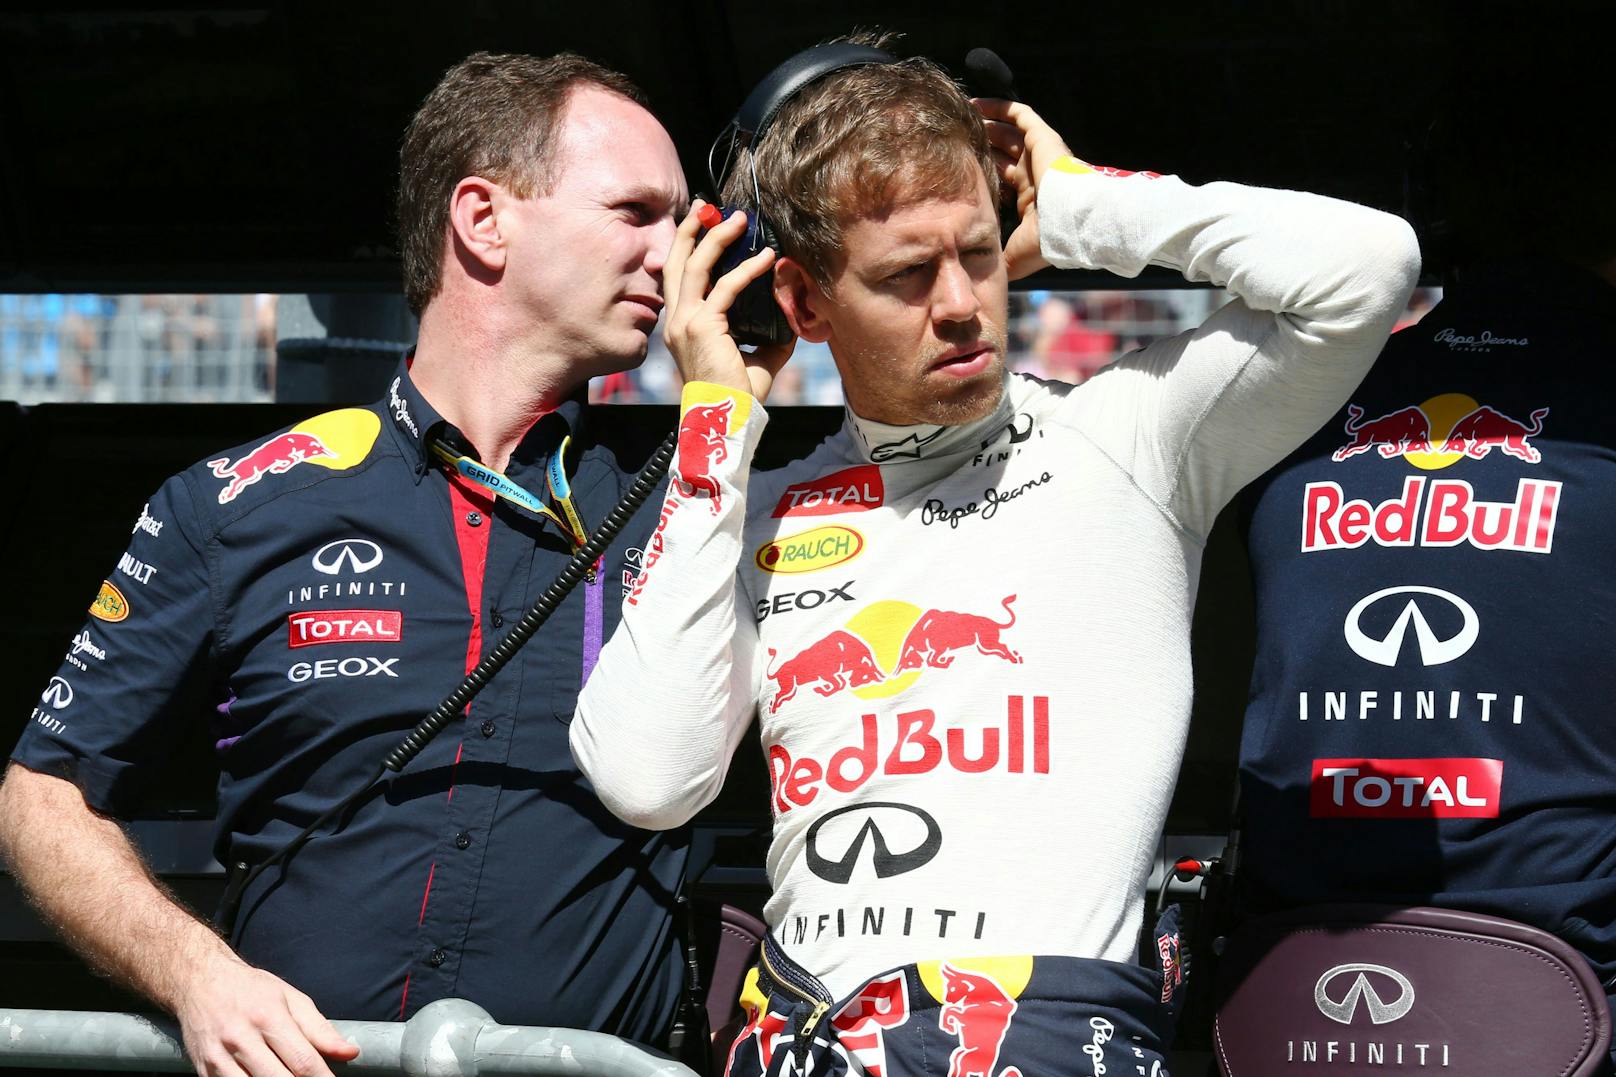 Red Bull bastelte an Sensations-Rückkehr von Vettel